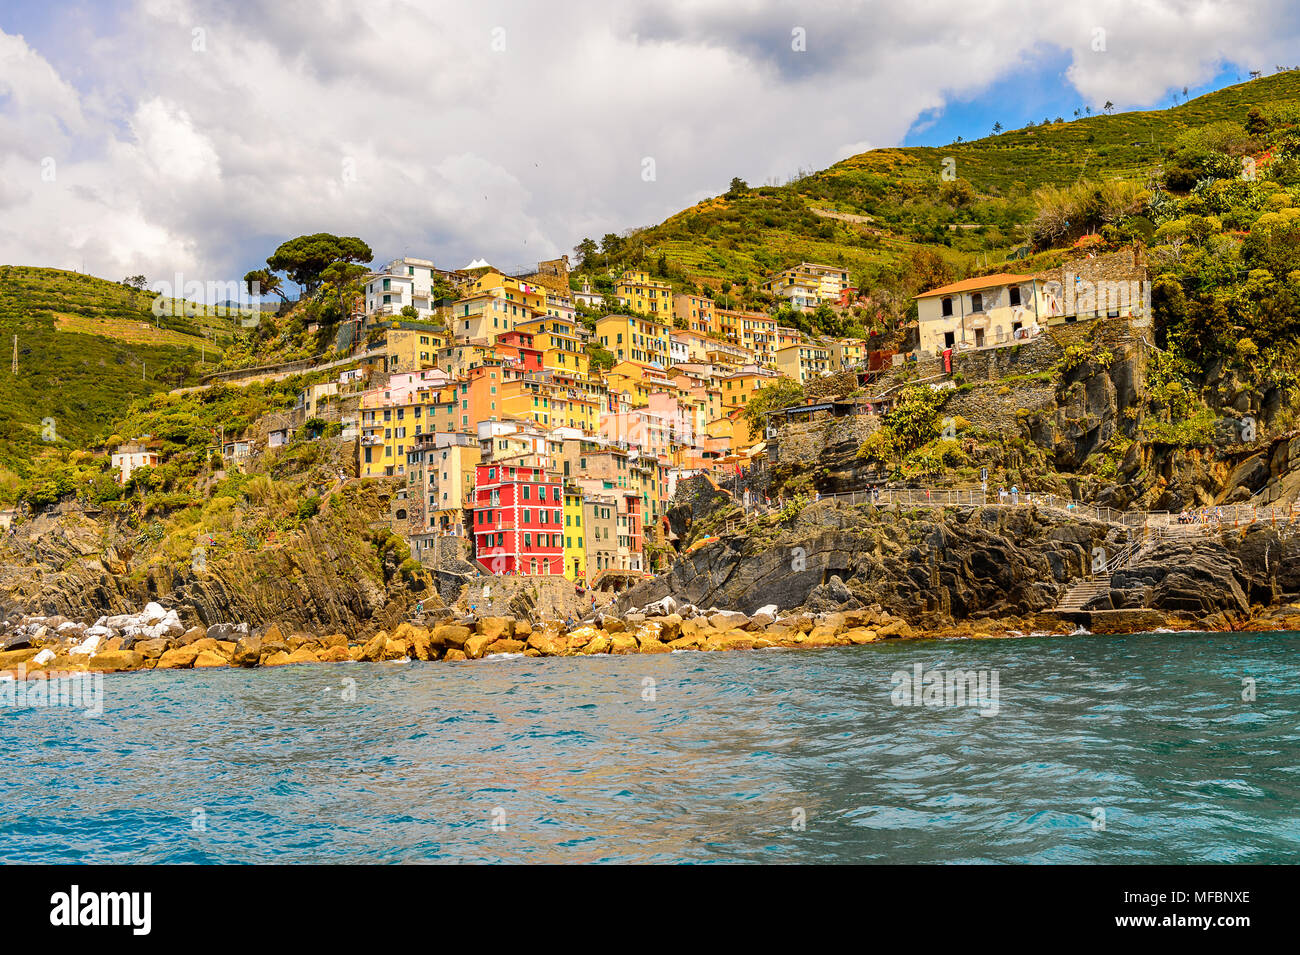 Beautiful sea view of Riomaggiore (Rimazuu), a village in province of La Spezia, Liguria, Italy. It's one of the lands of Cinque Terre, UNESCO World H Stock Photo